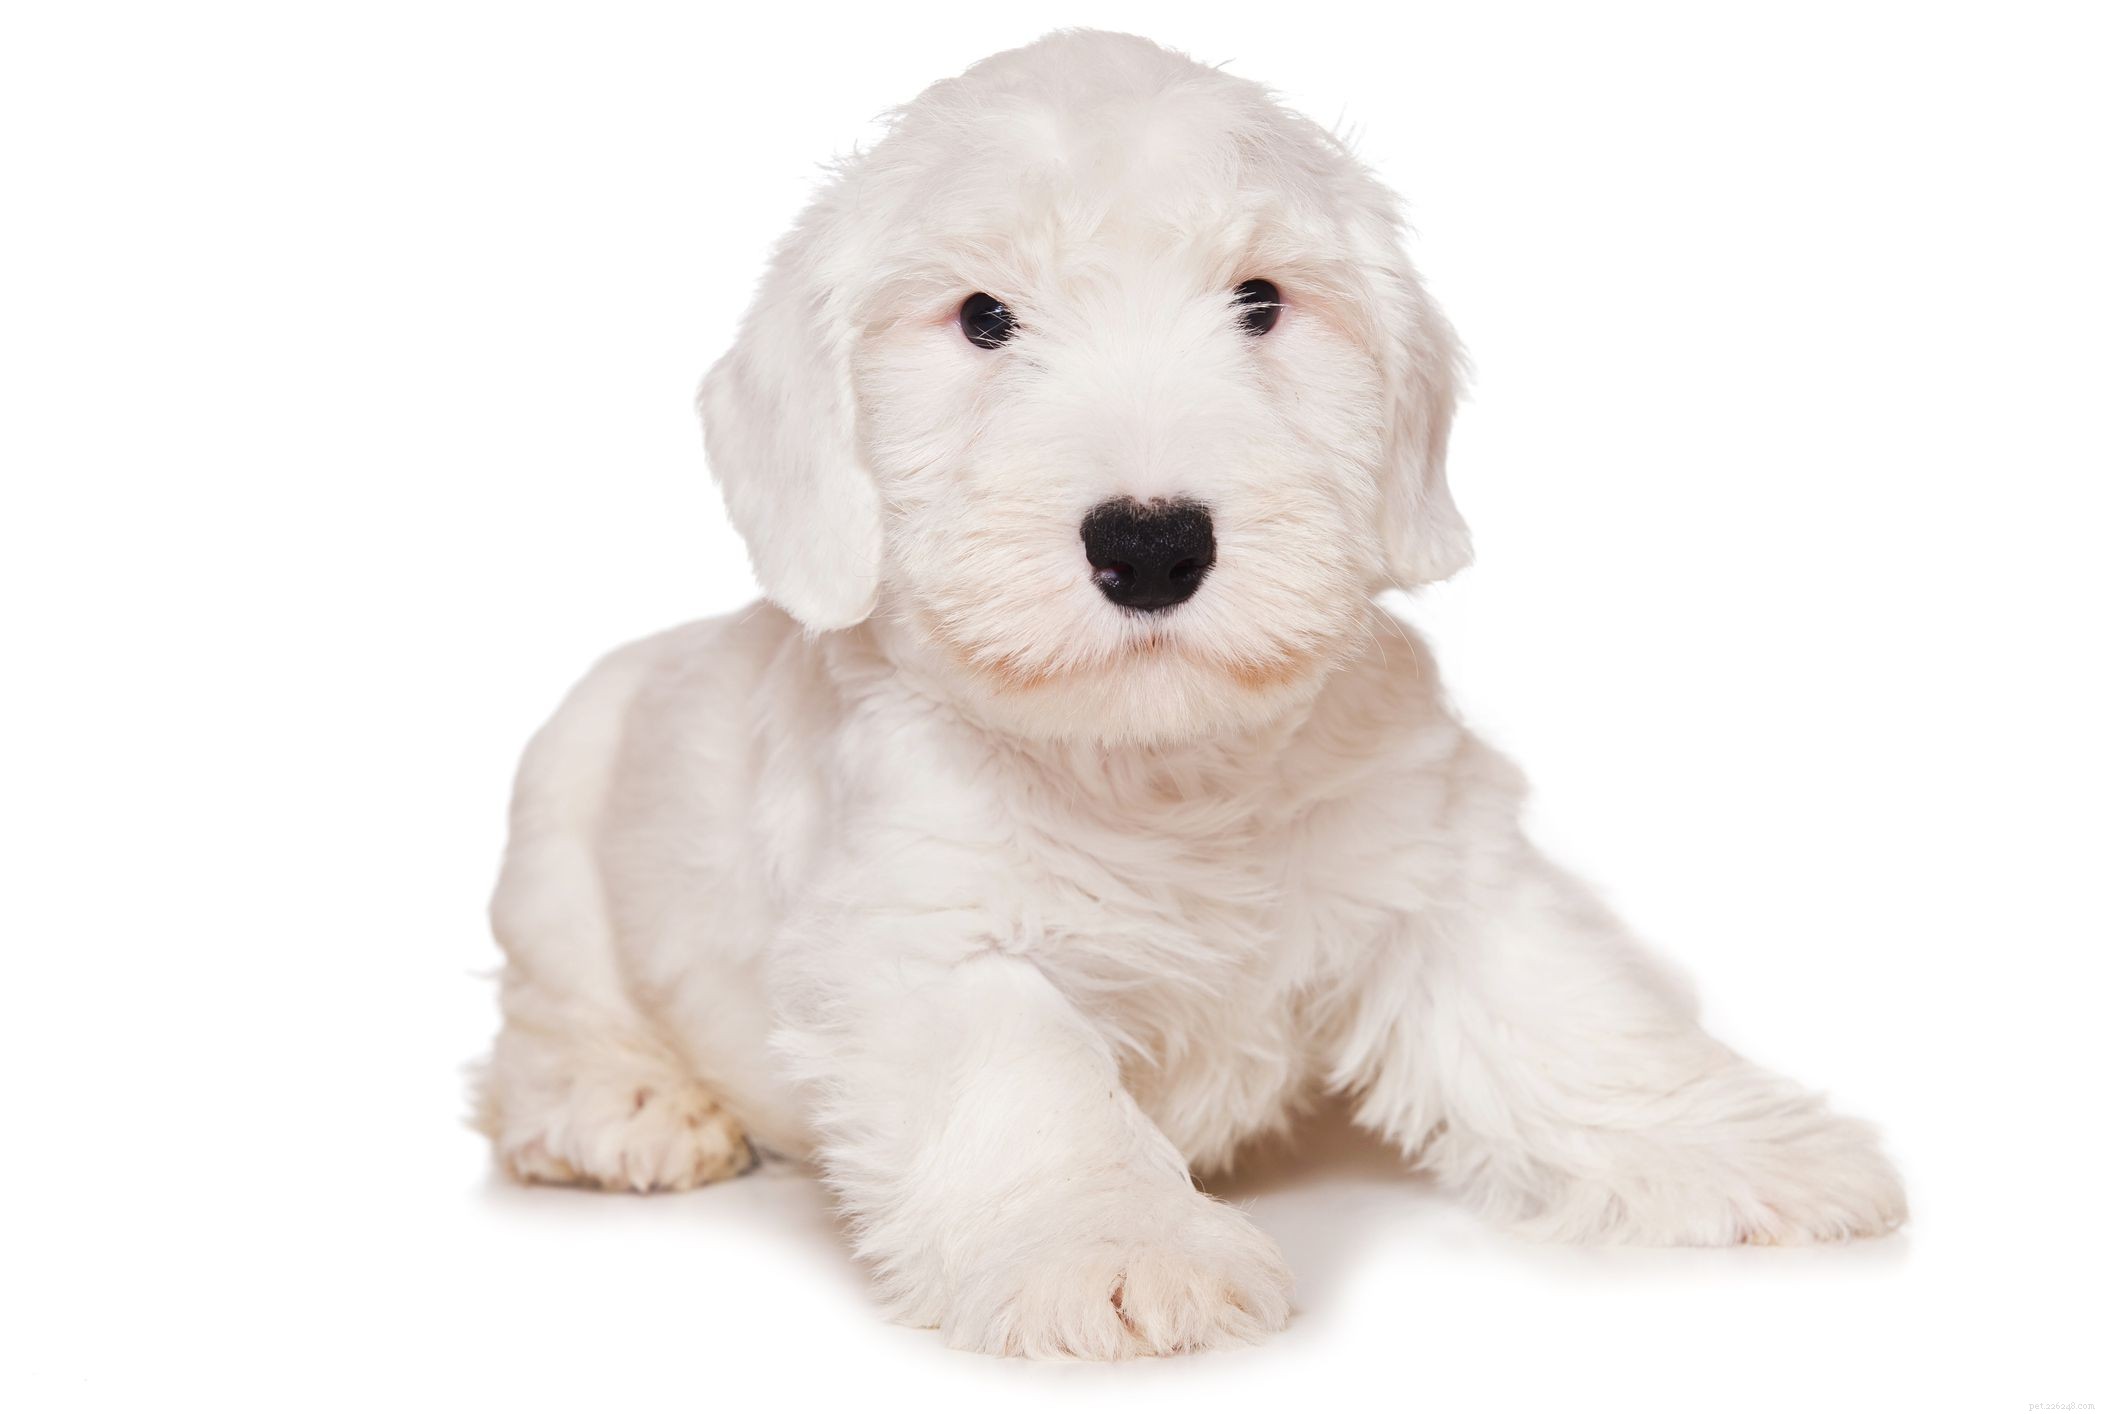 Sealyham Terrier:profilo della razza canina